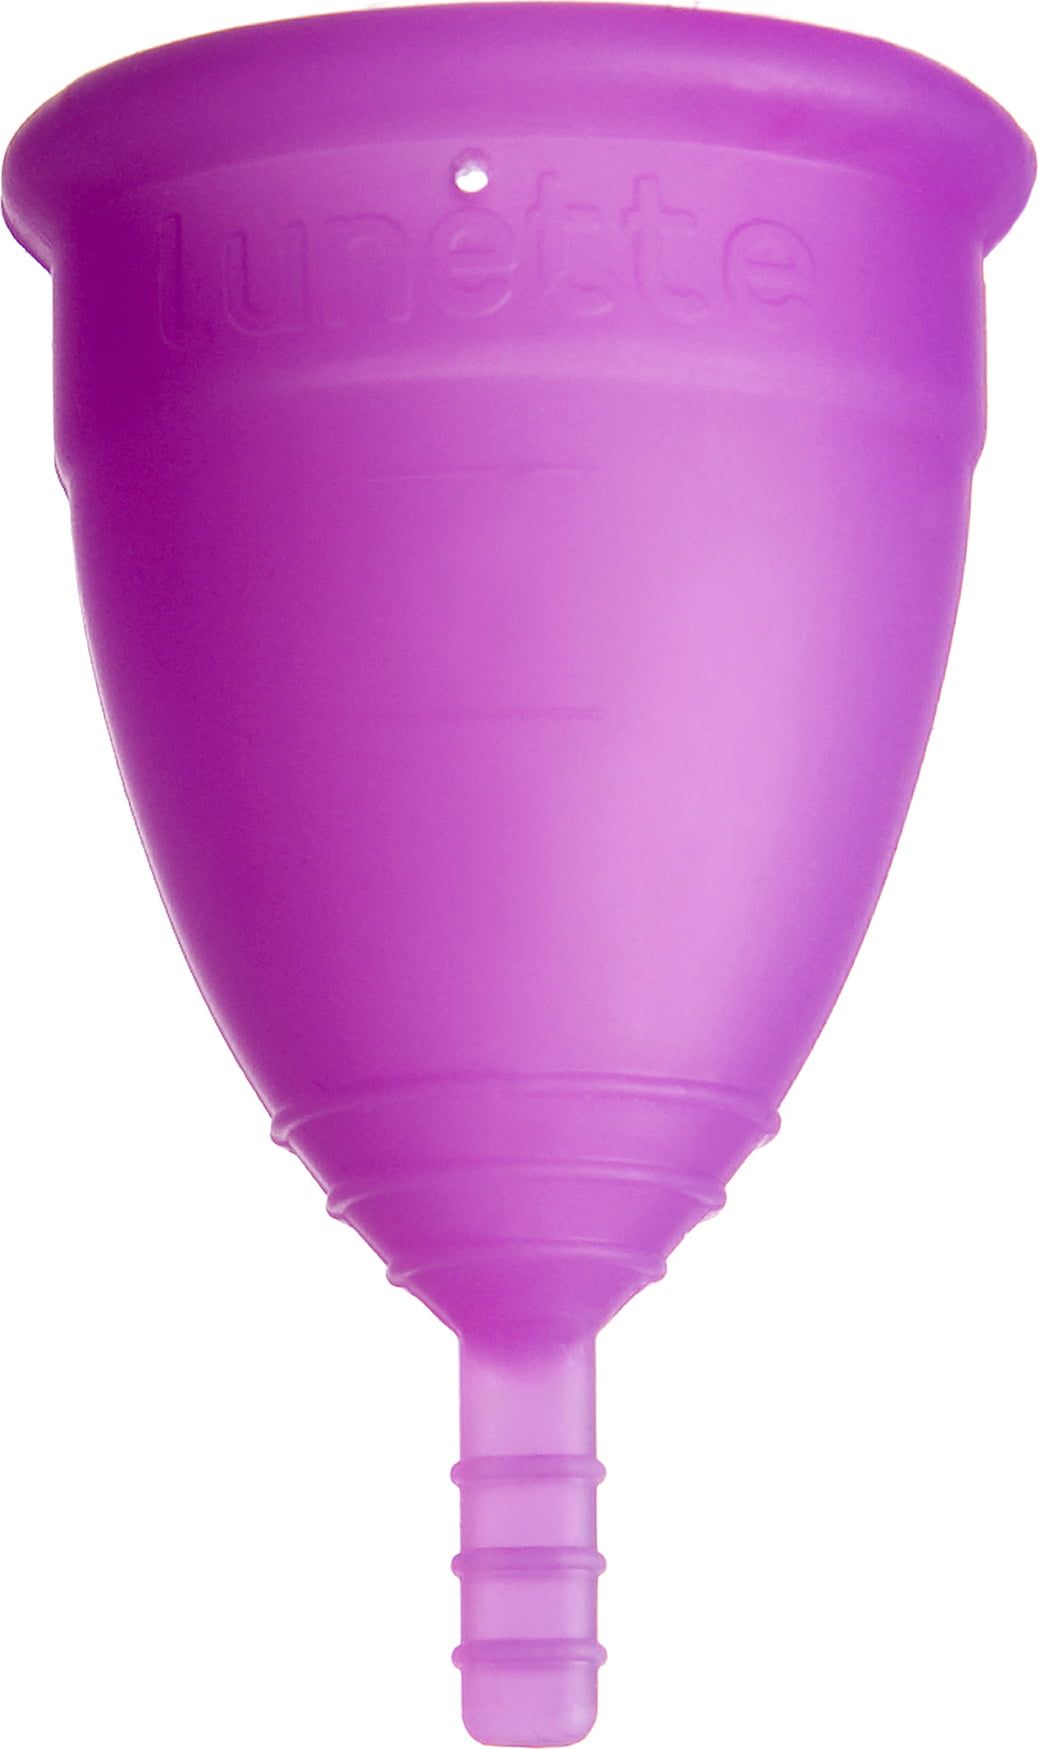 Buy Lunette menstrual cup, violet, size 2 at Ubuy Ghana